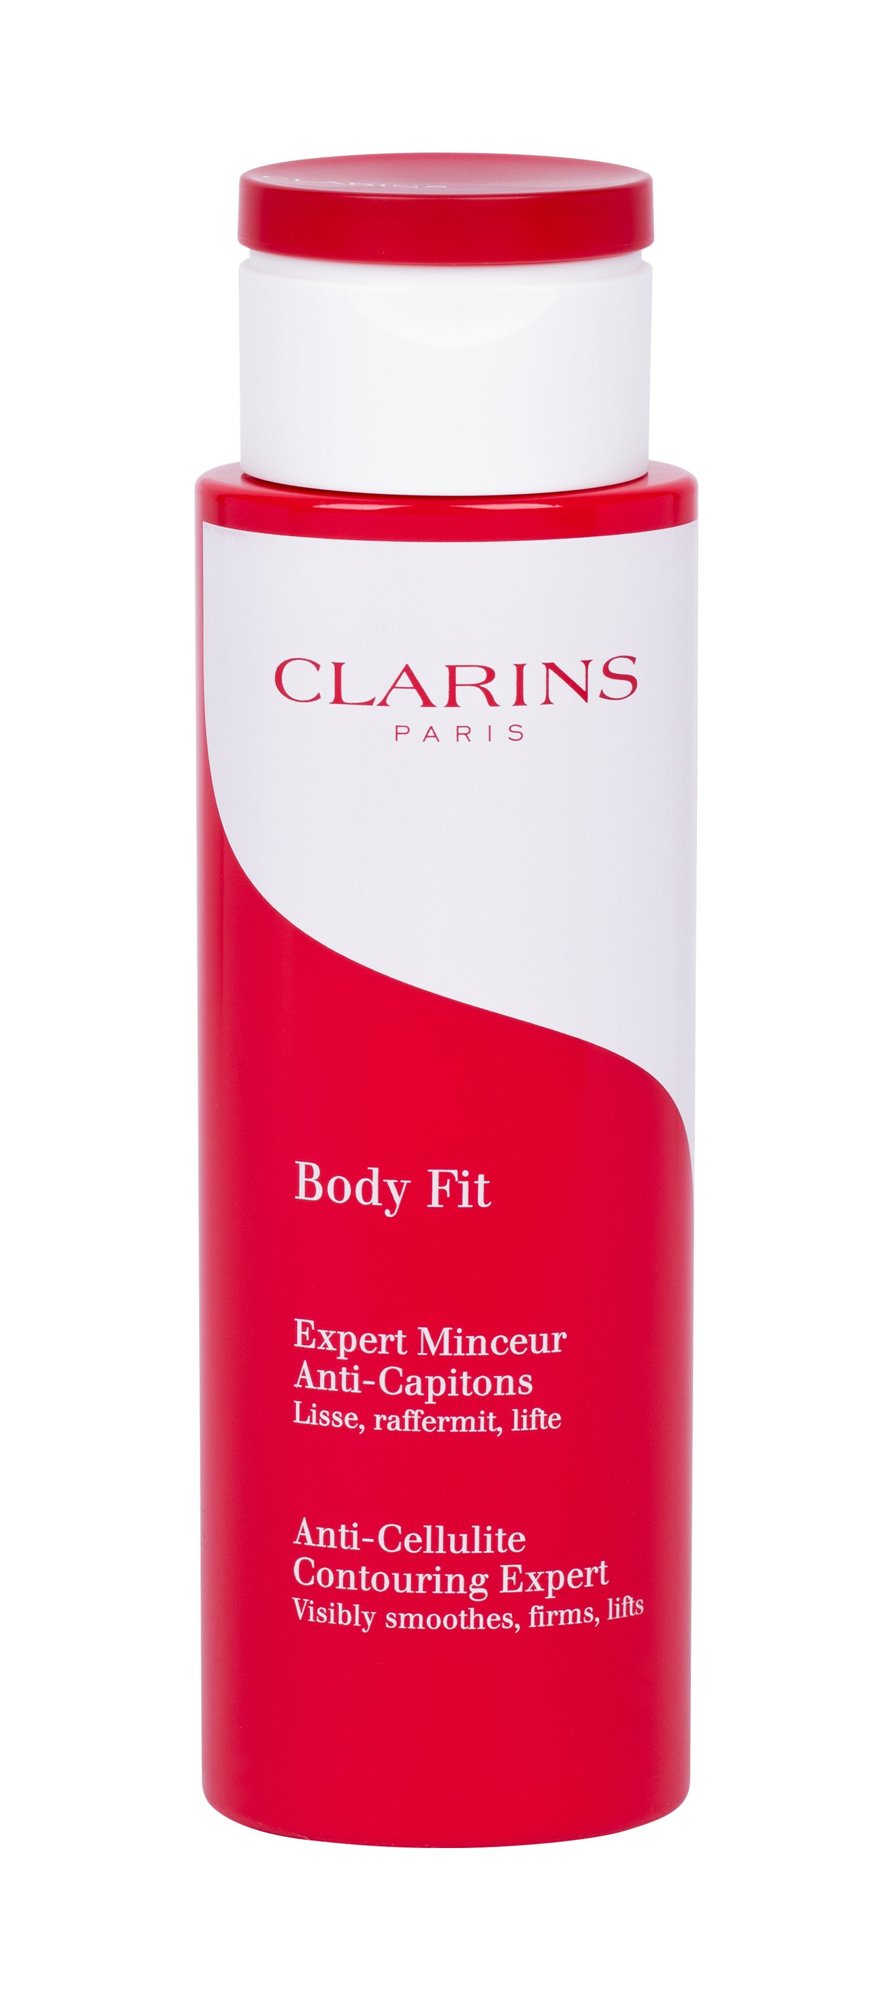 Clarins Body Fit Anti-Cellulite priemonė celiulitui ir strijoms